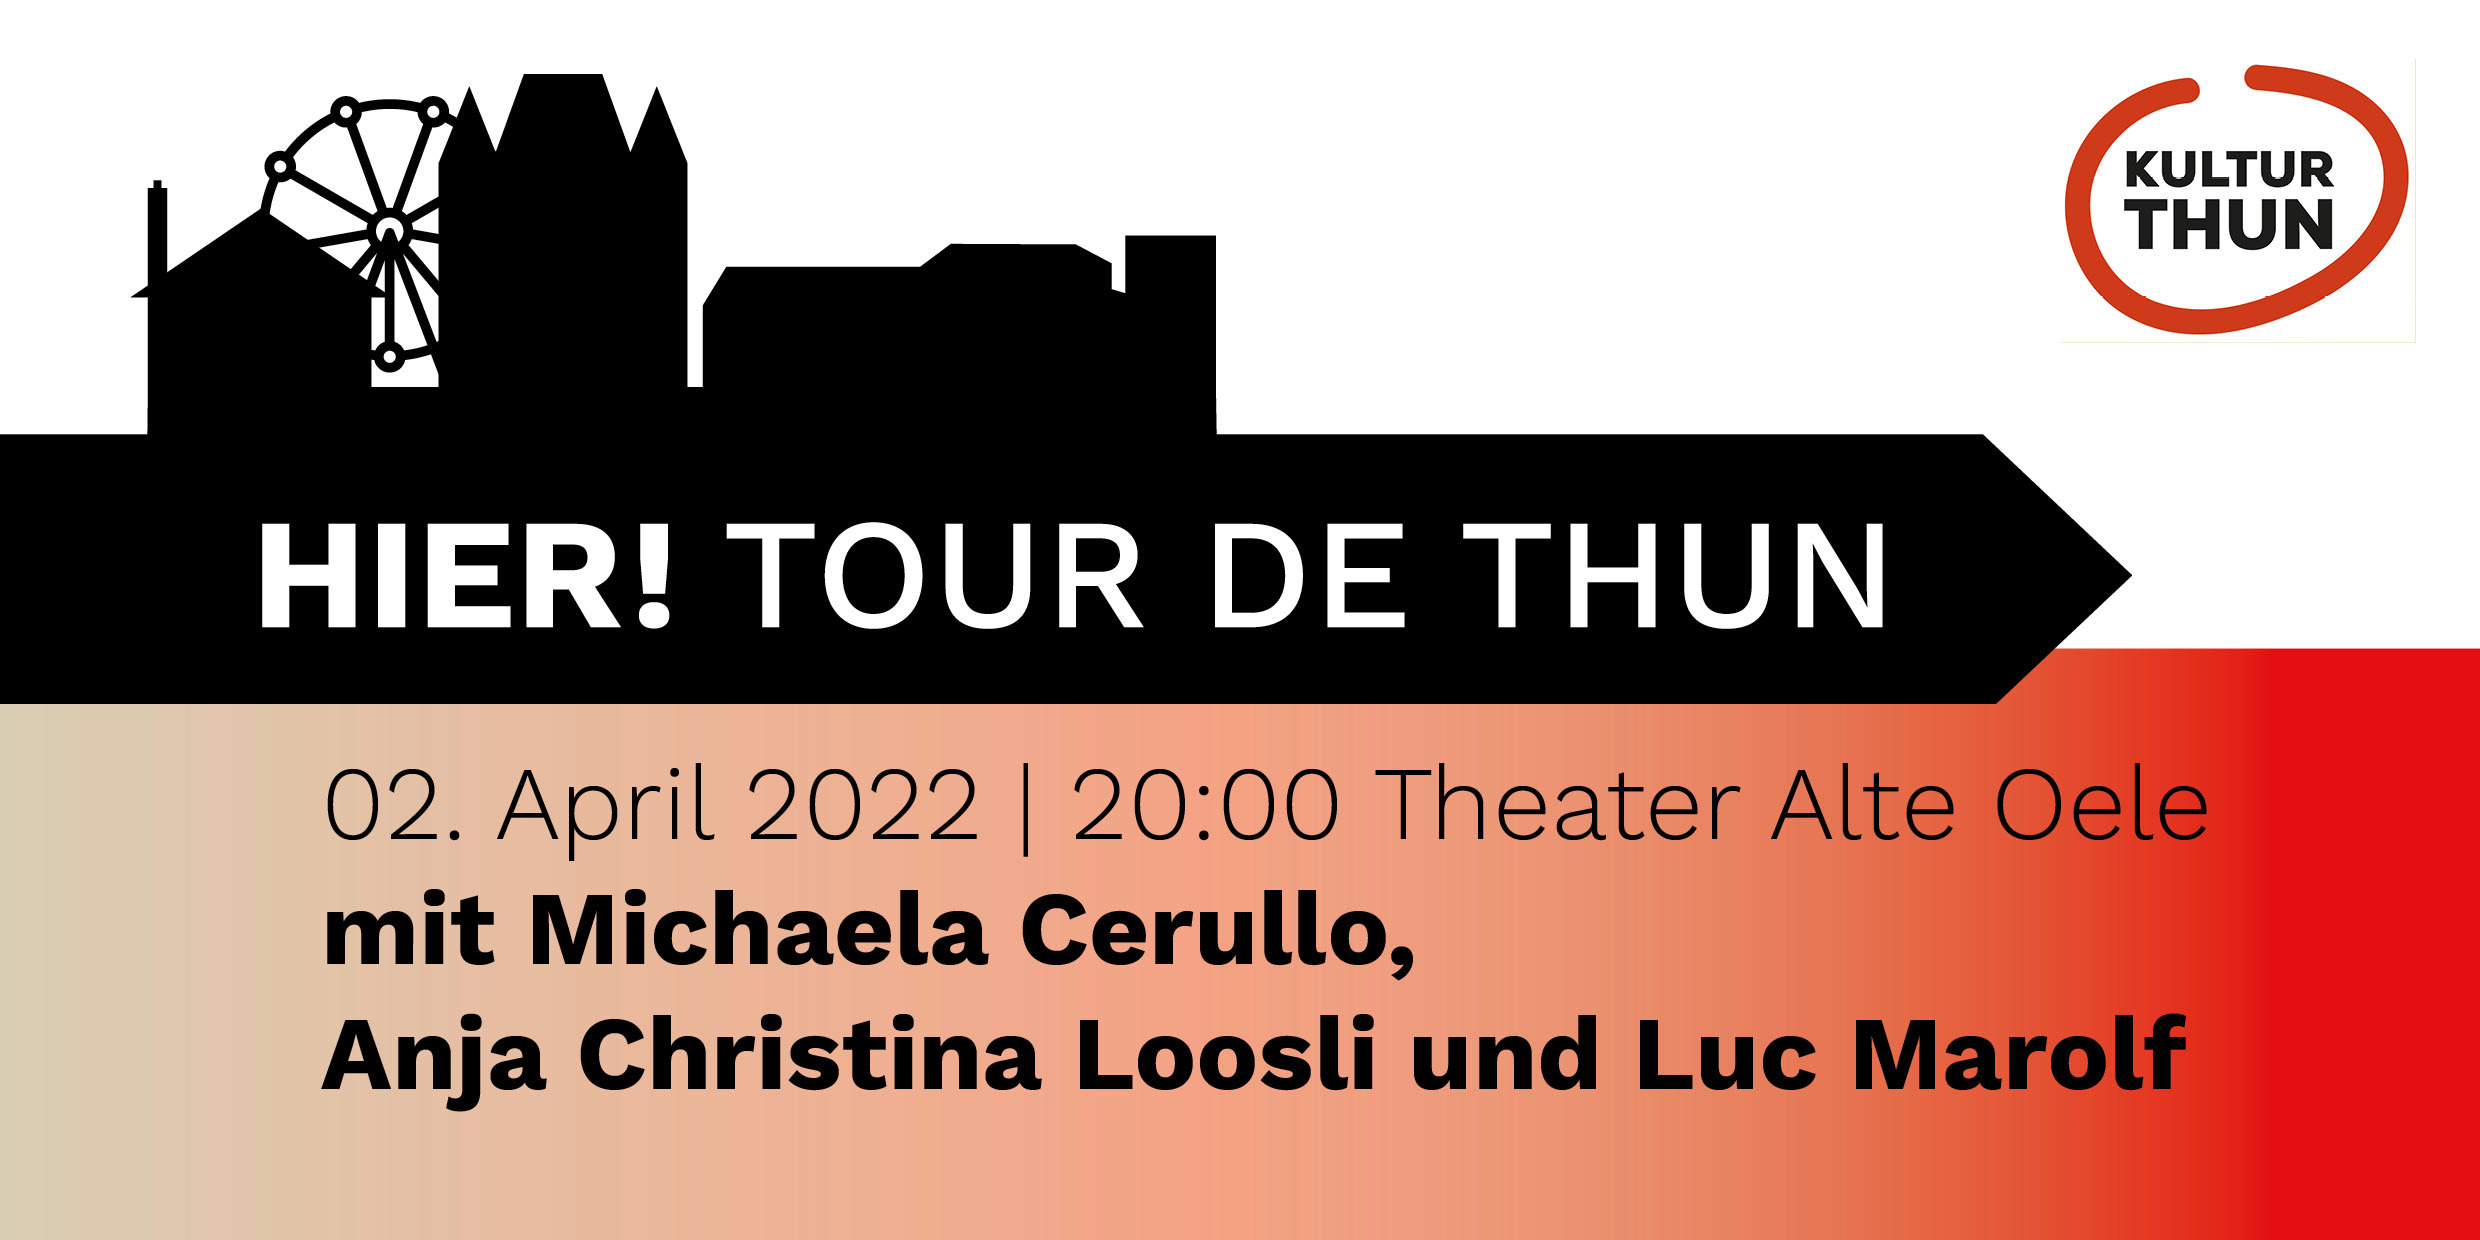 HIER! Tour de Thun - KULTURTHUN | Dachverbund der Thuner Kulturszene